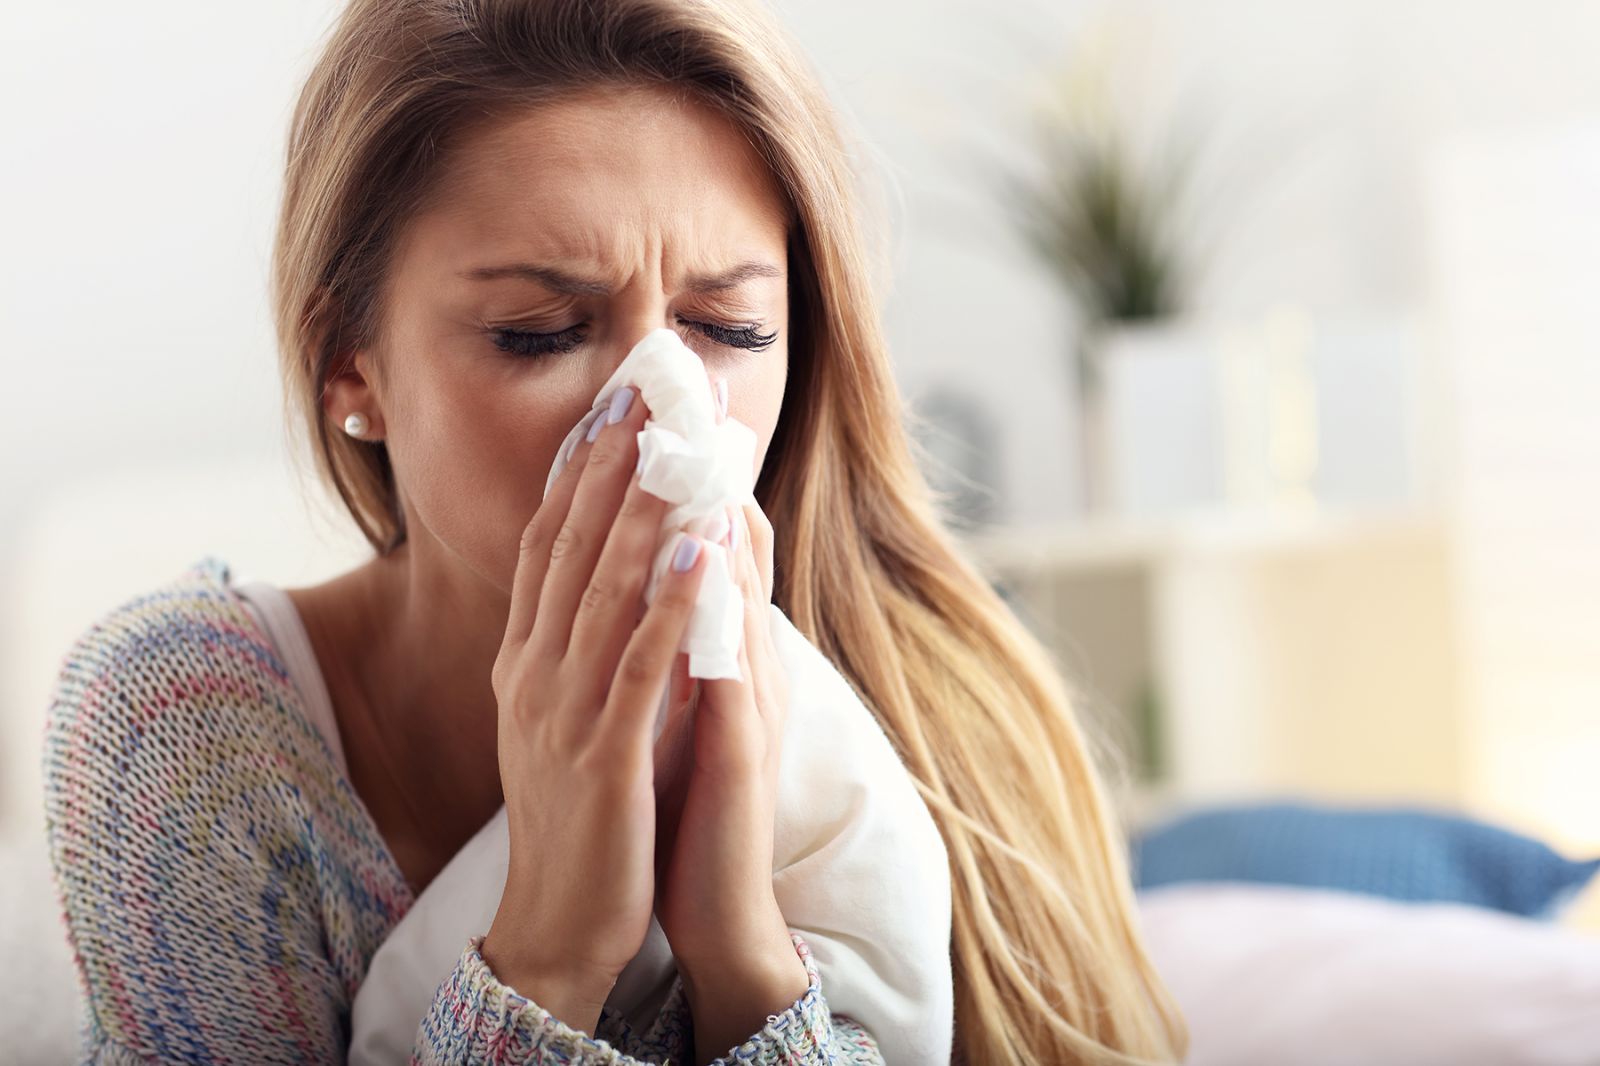 Осложнения насморка могут привести к угрожающим жизни заболеваниям